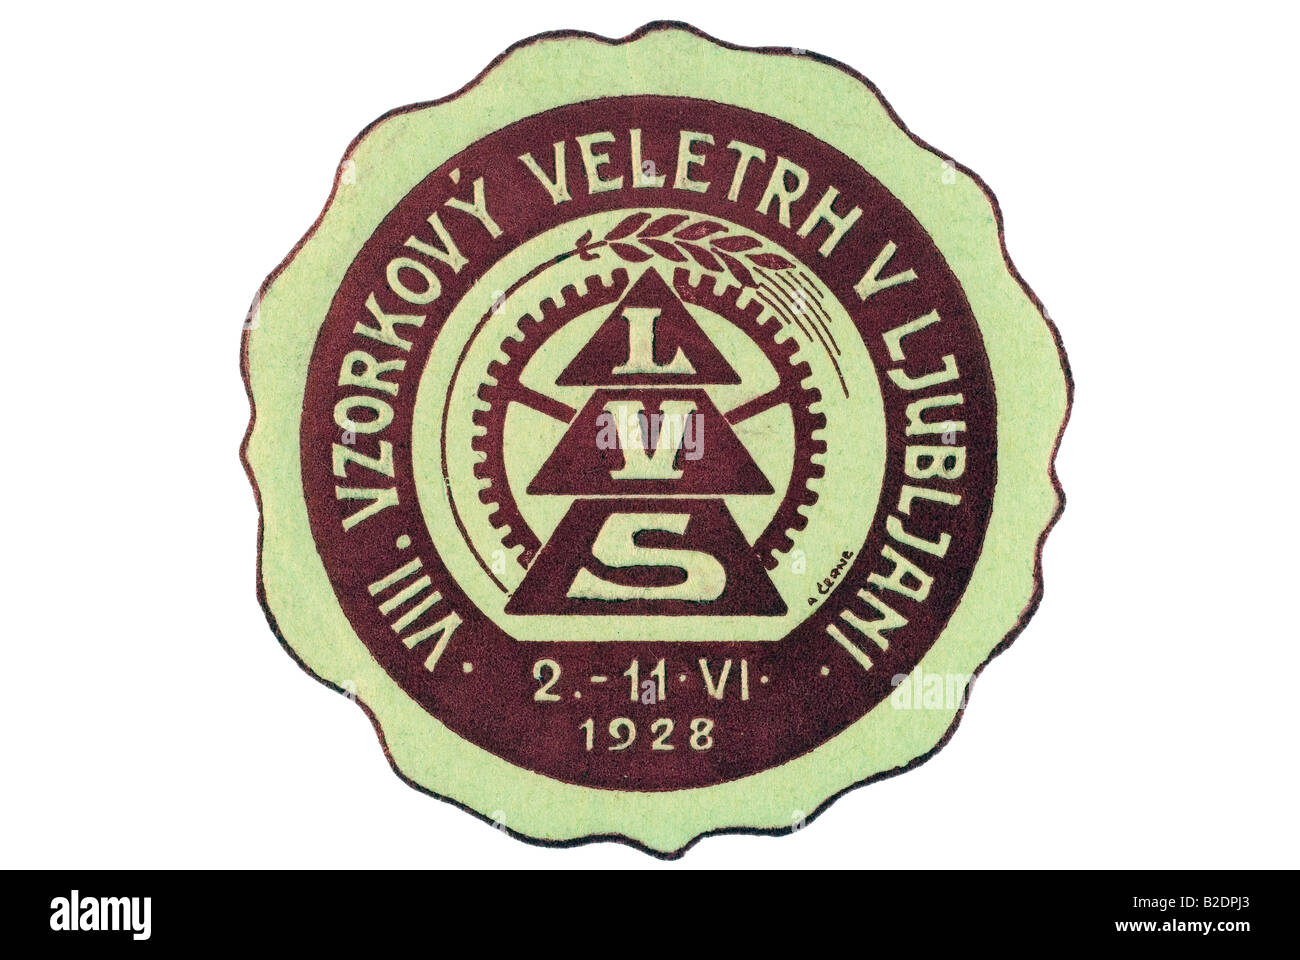 trading stamp LVS VIII Vzorkovy Veletrh v Ljubljani 2 11 VI 1928 Stock Photo